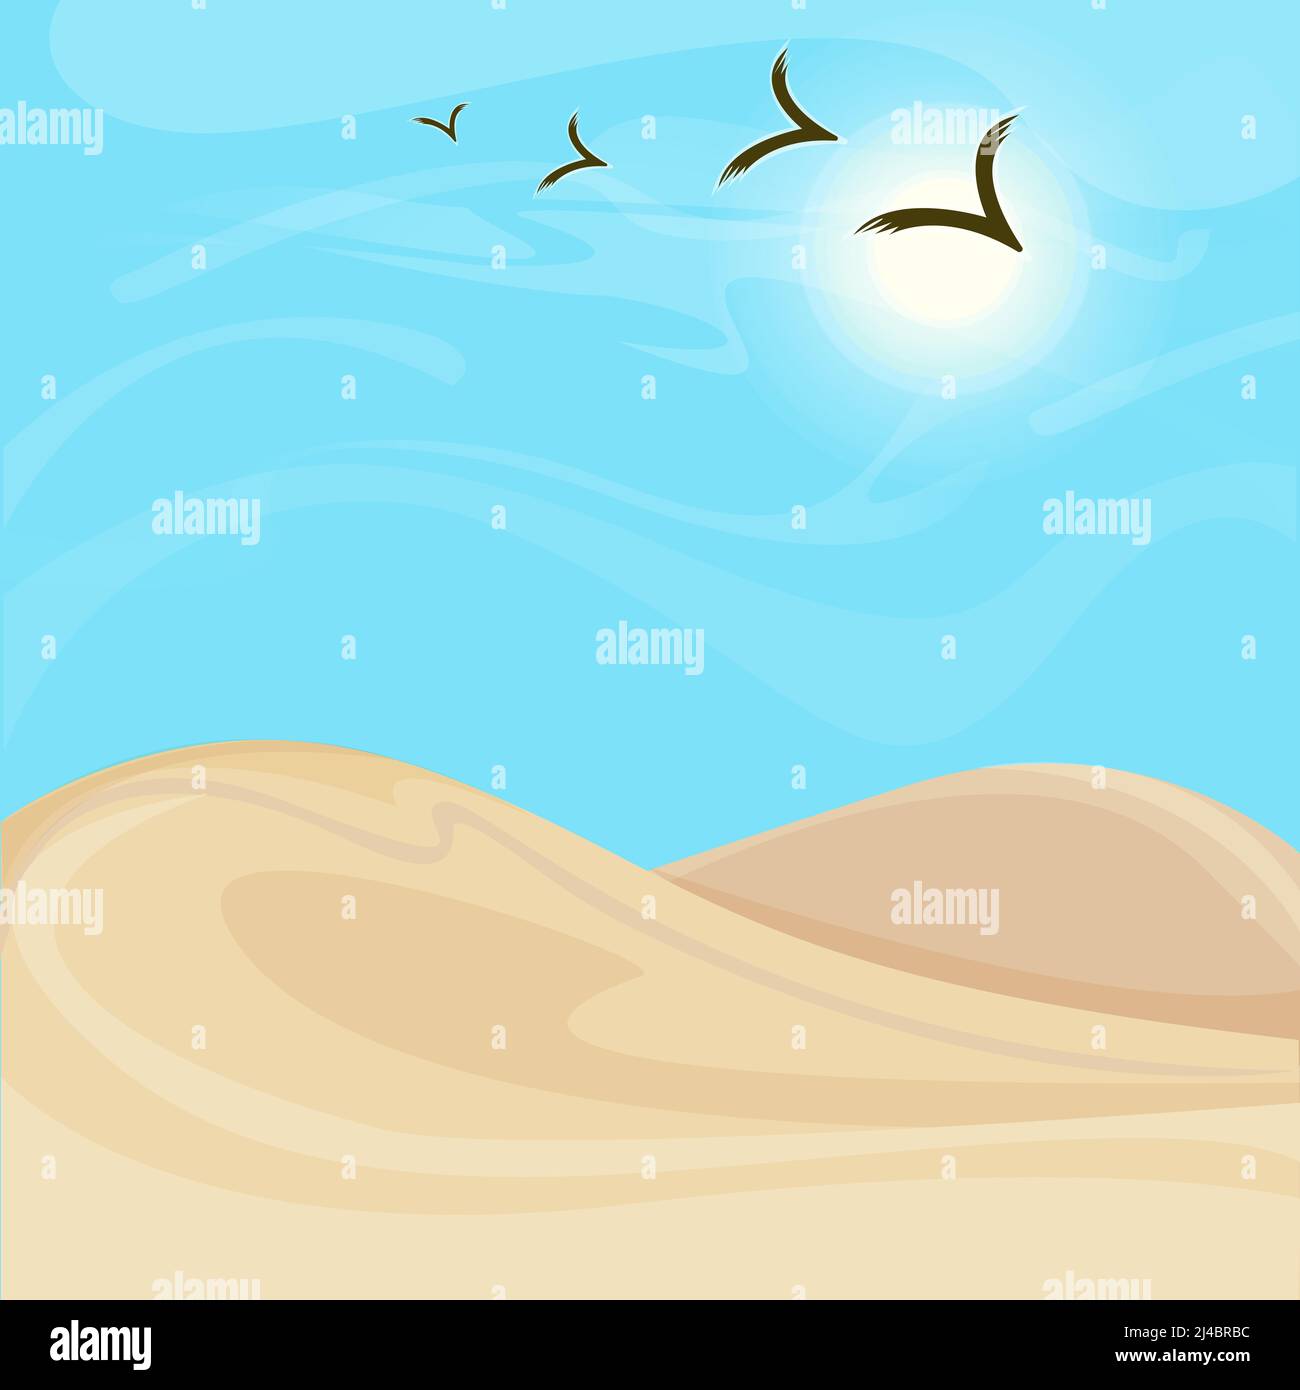 Paysage désertique lumineux et chaud avec dunes de sable et flock illustration du vecteur des oiseaux volants Illustration de Vecteur